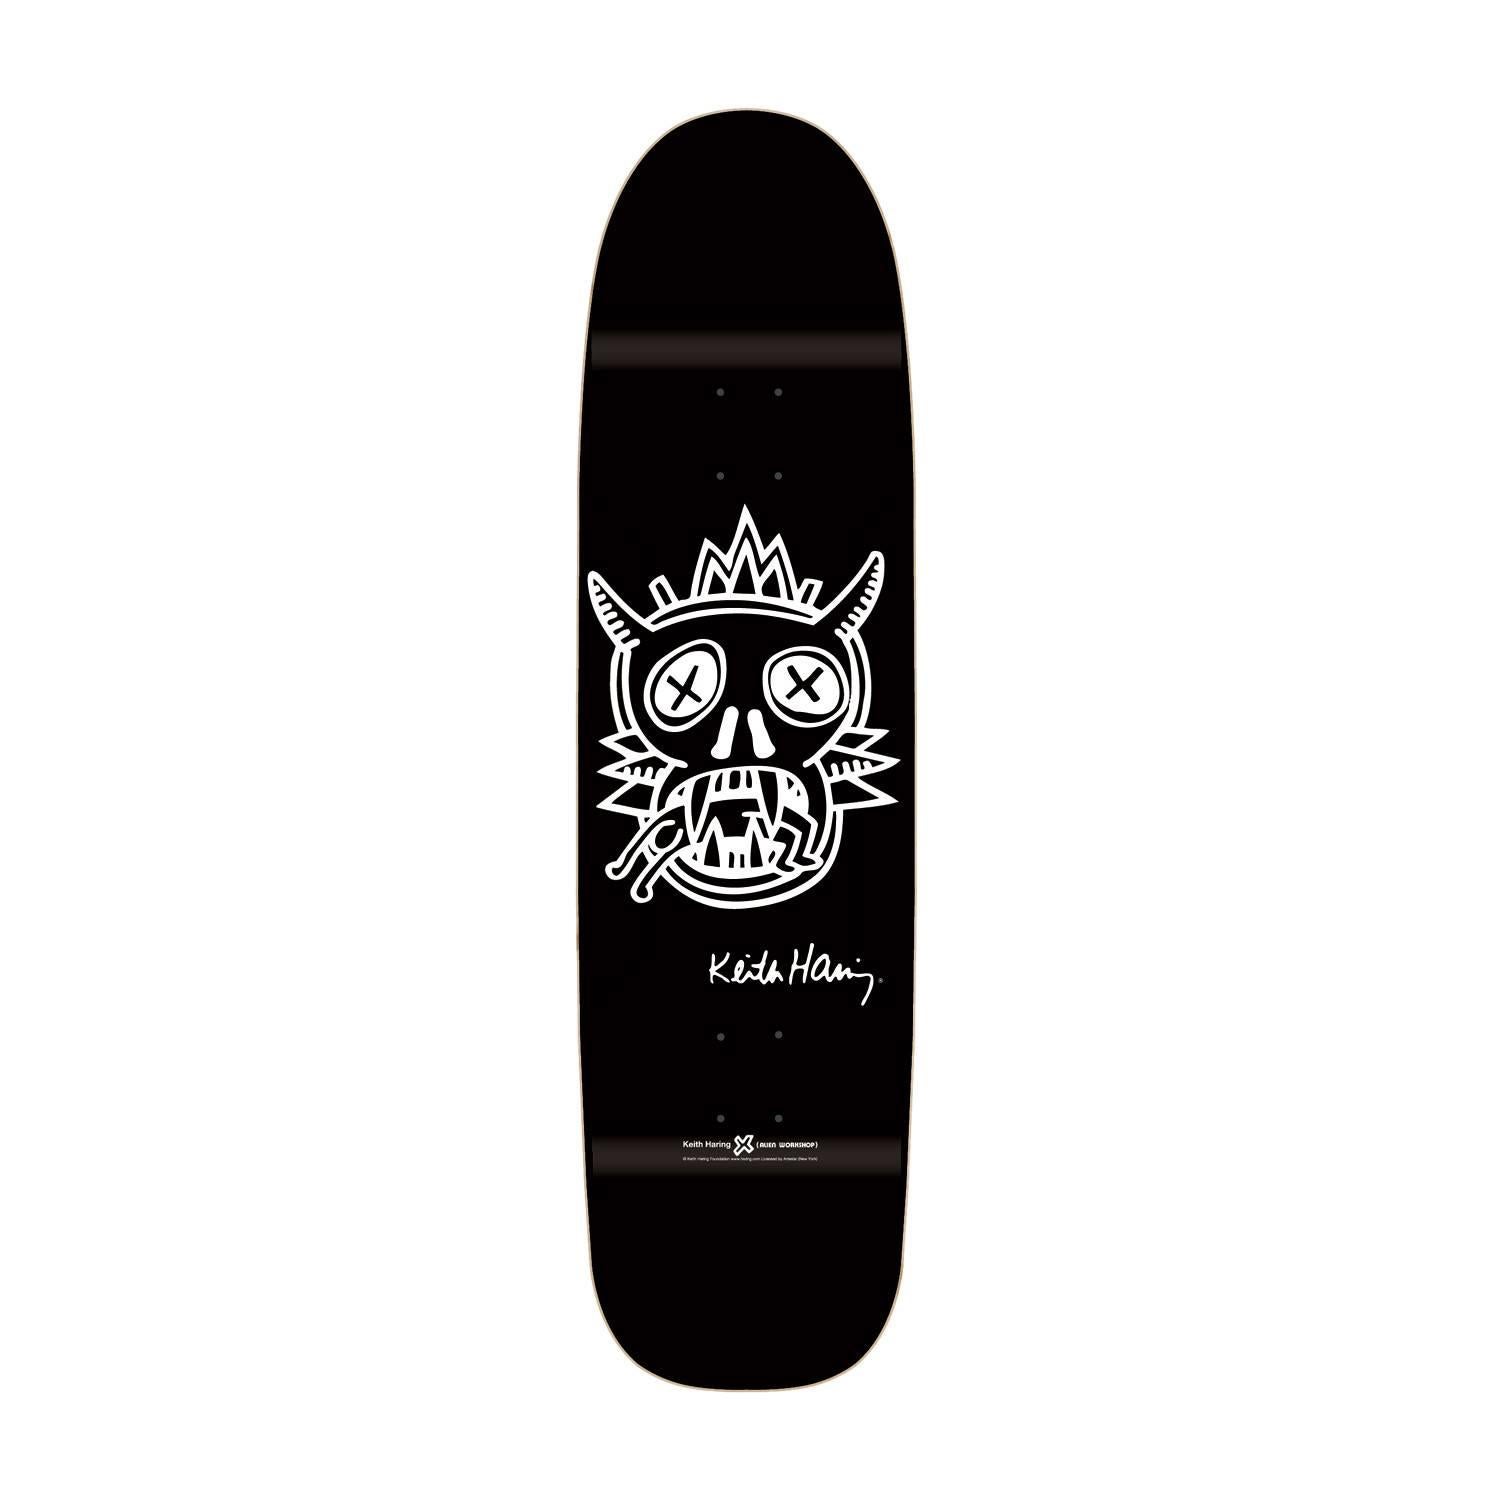 Keith Haring Skateboard Deck (Schwarz) – Art von (after) Keith Haring